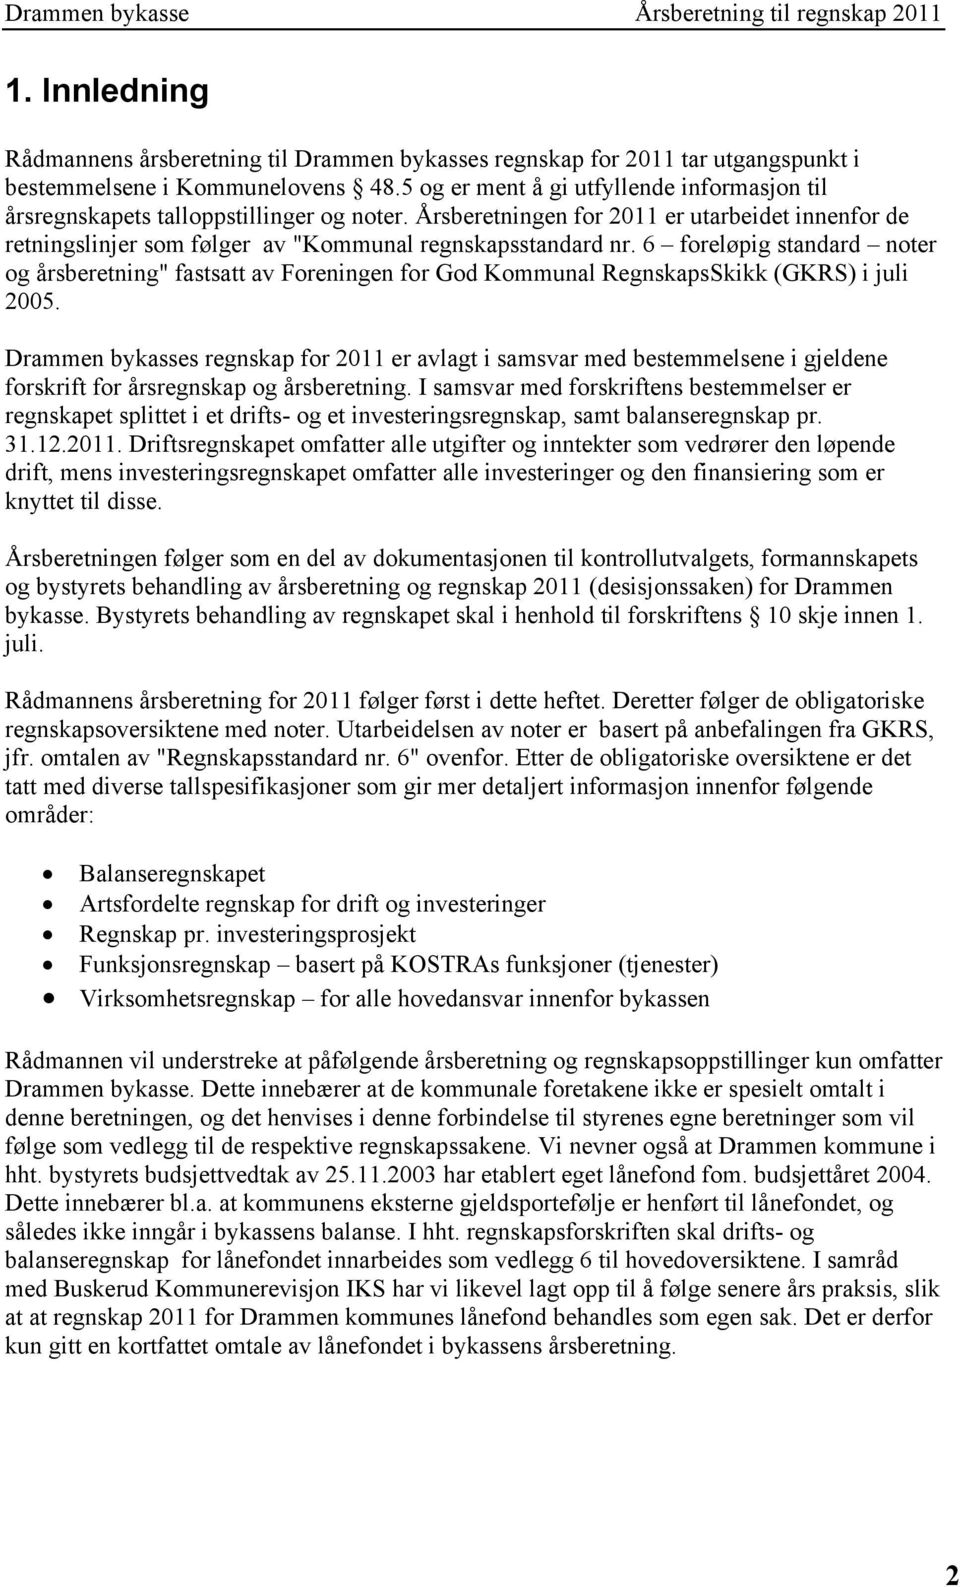 6 foreløpig standard noter og årsberetning" fastsatt av Foreningen for God Kommunal RegnskapsSkikk (GKRS) i juli 2005.